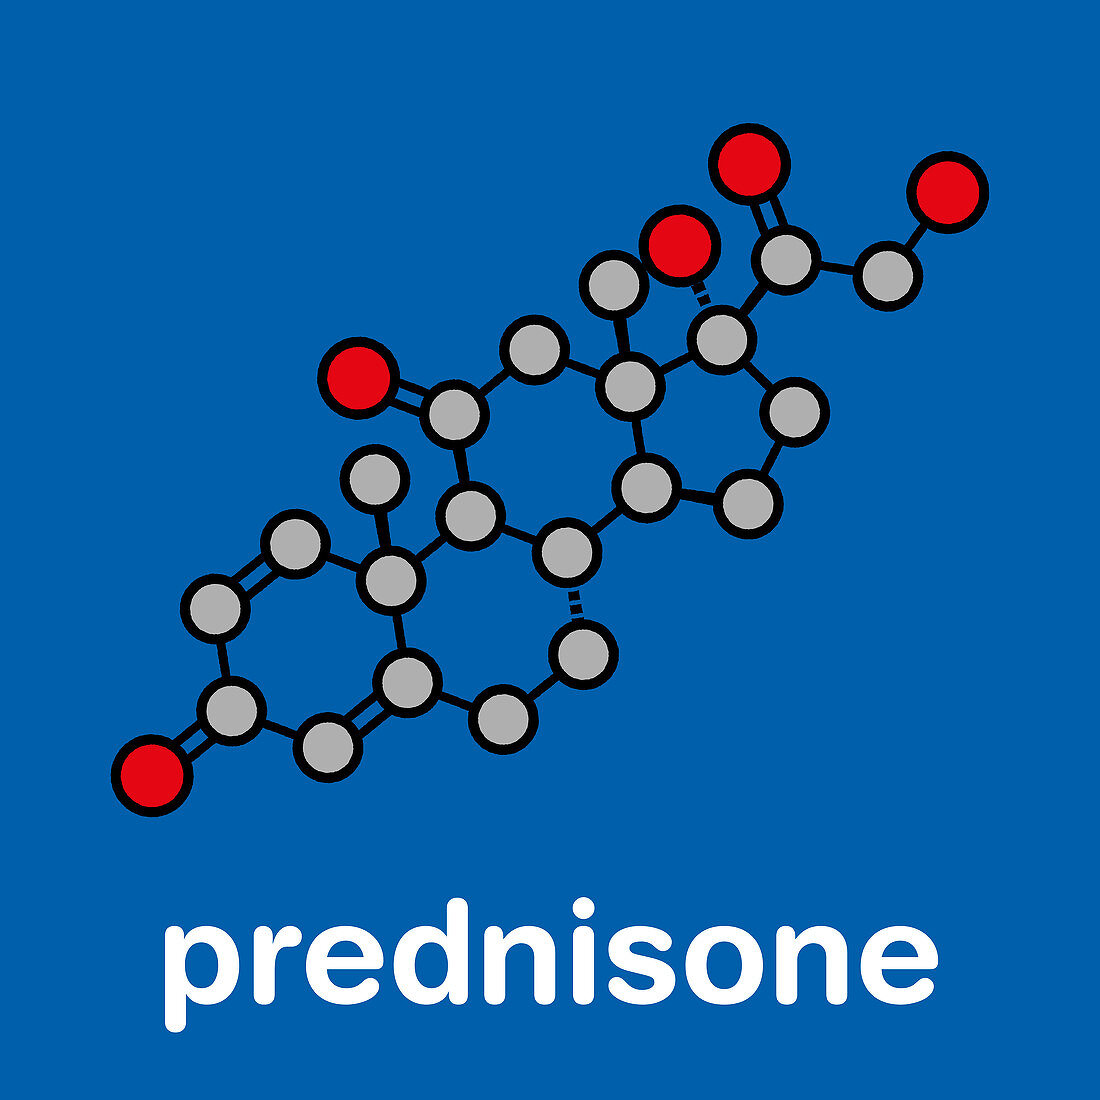 Prednisone corticosteroid drug molecule, illustration